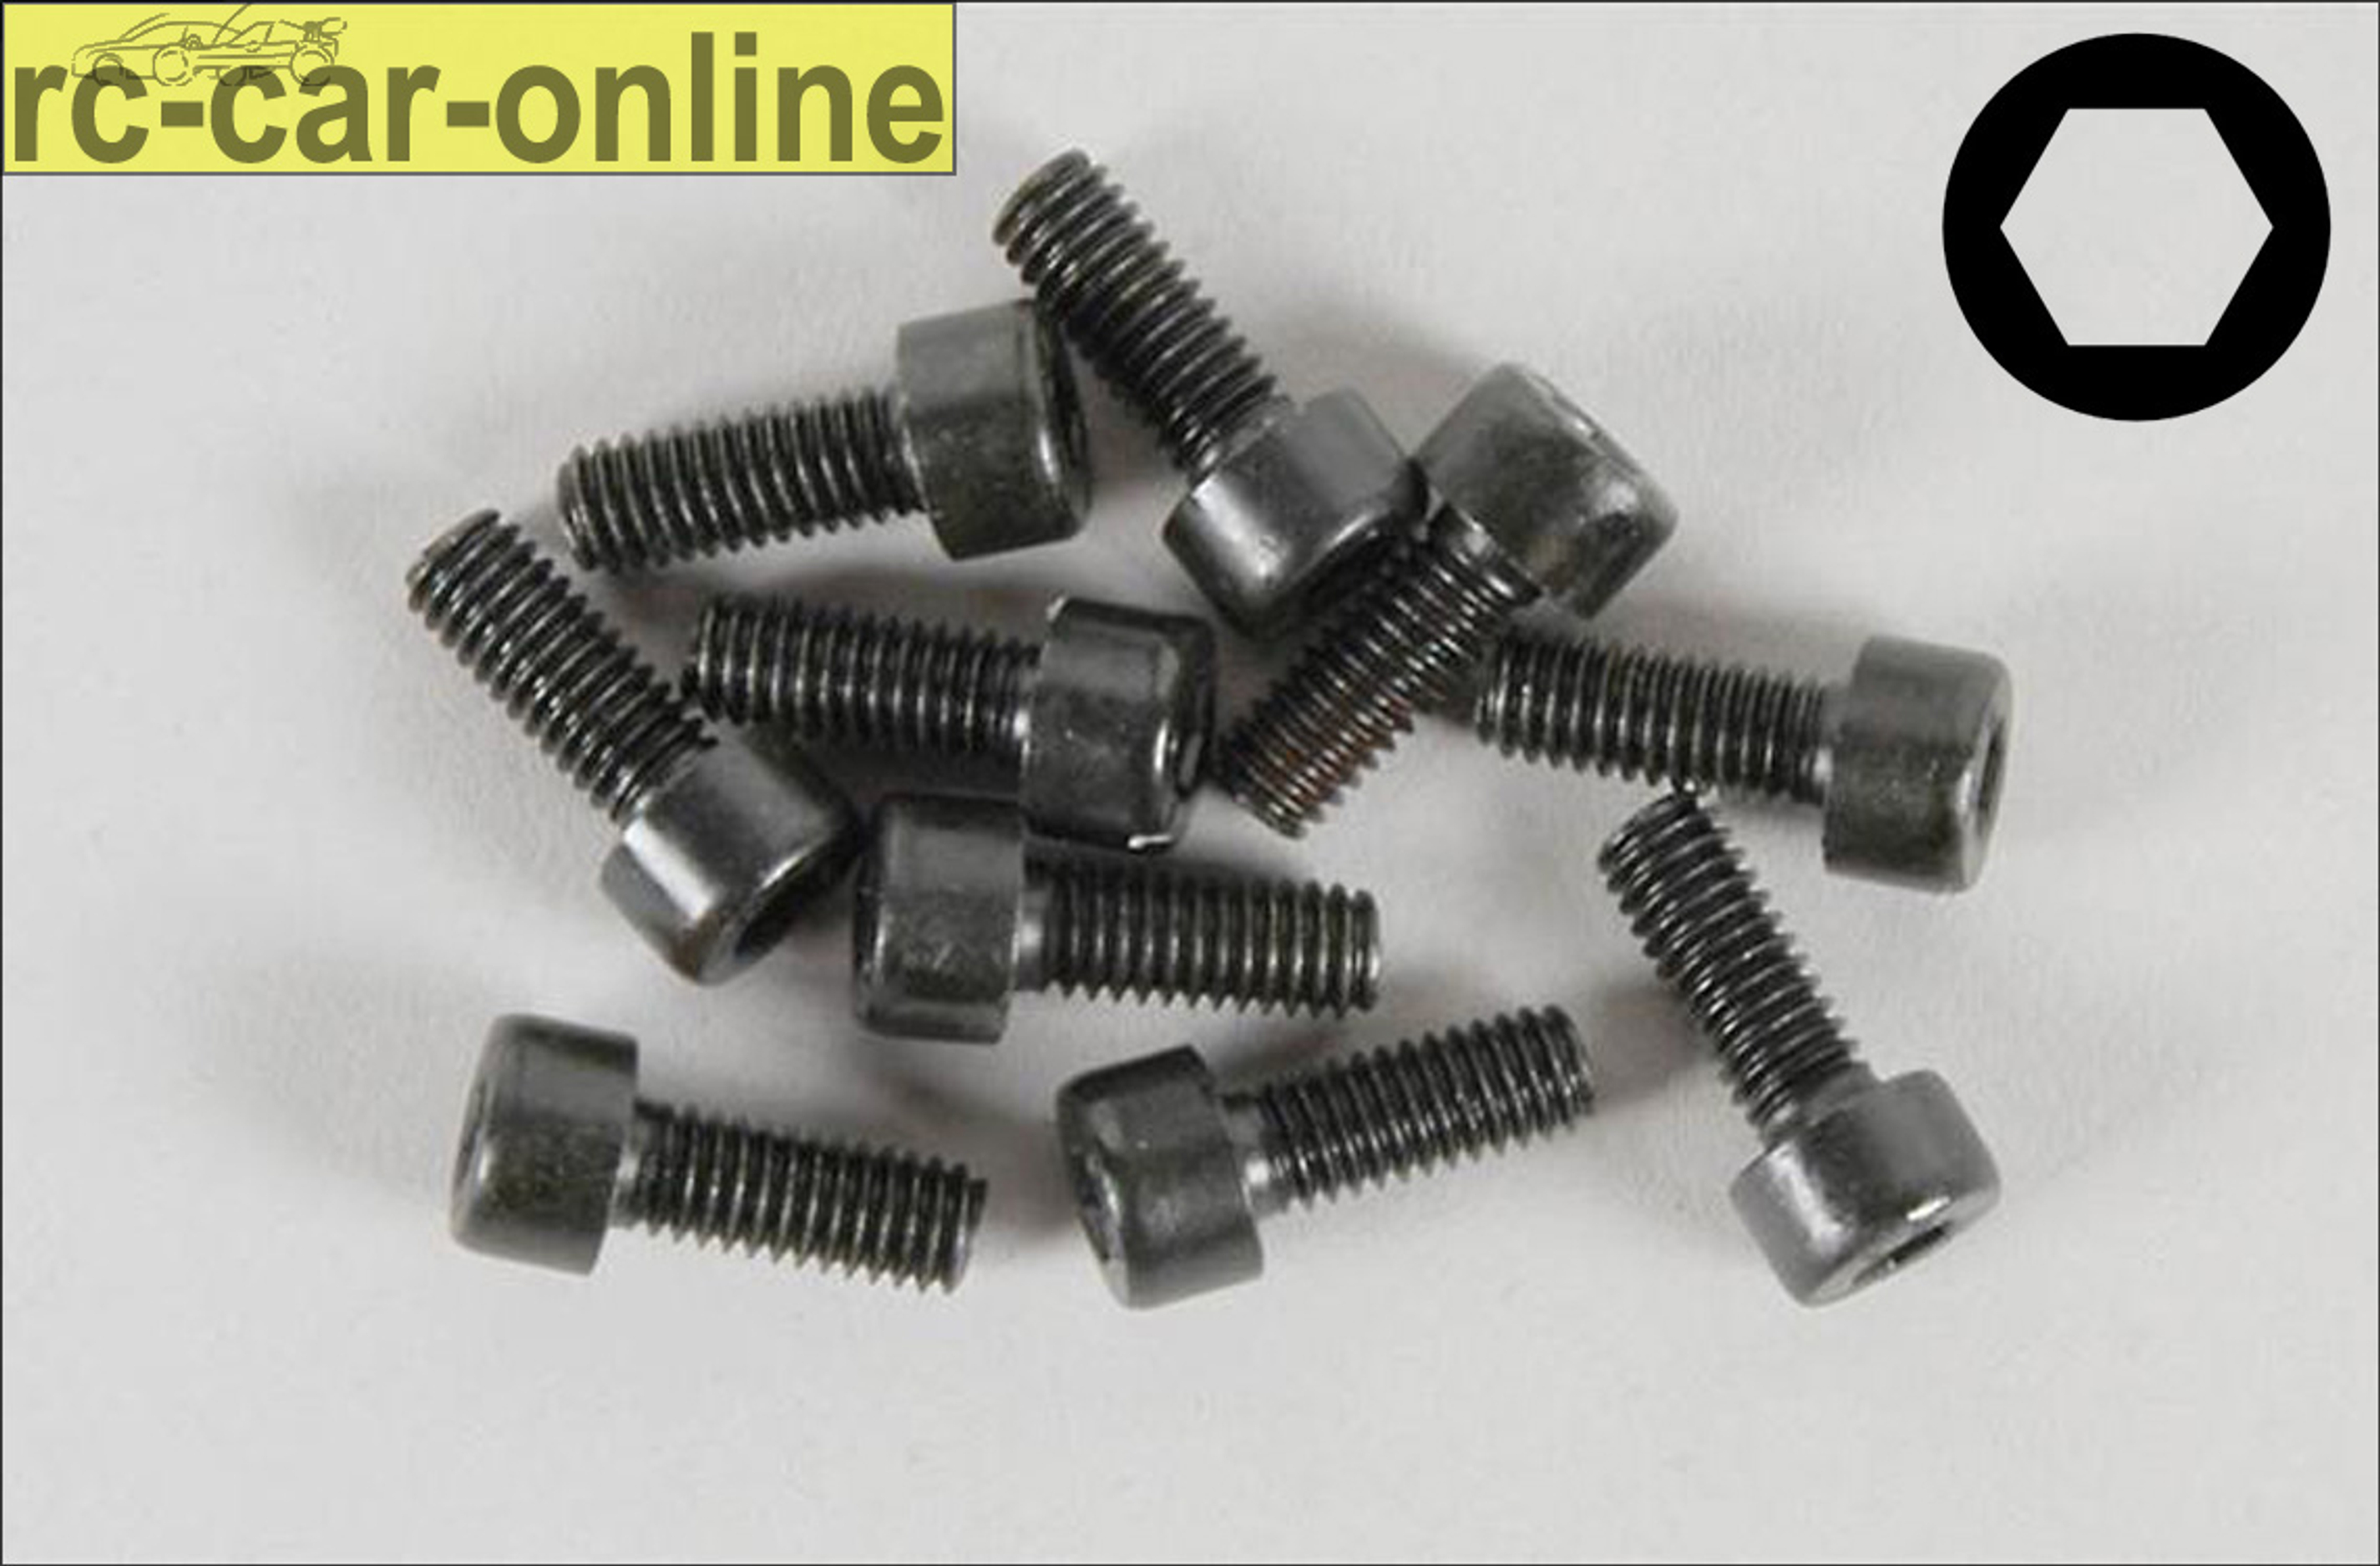 6725/10 FG Socket head cap screws M4x10 mm, 10 pieces